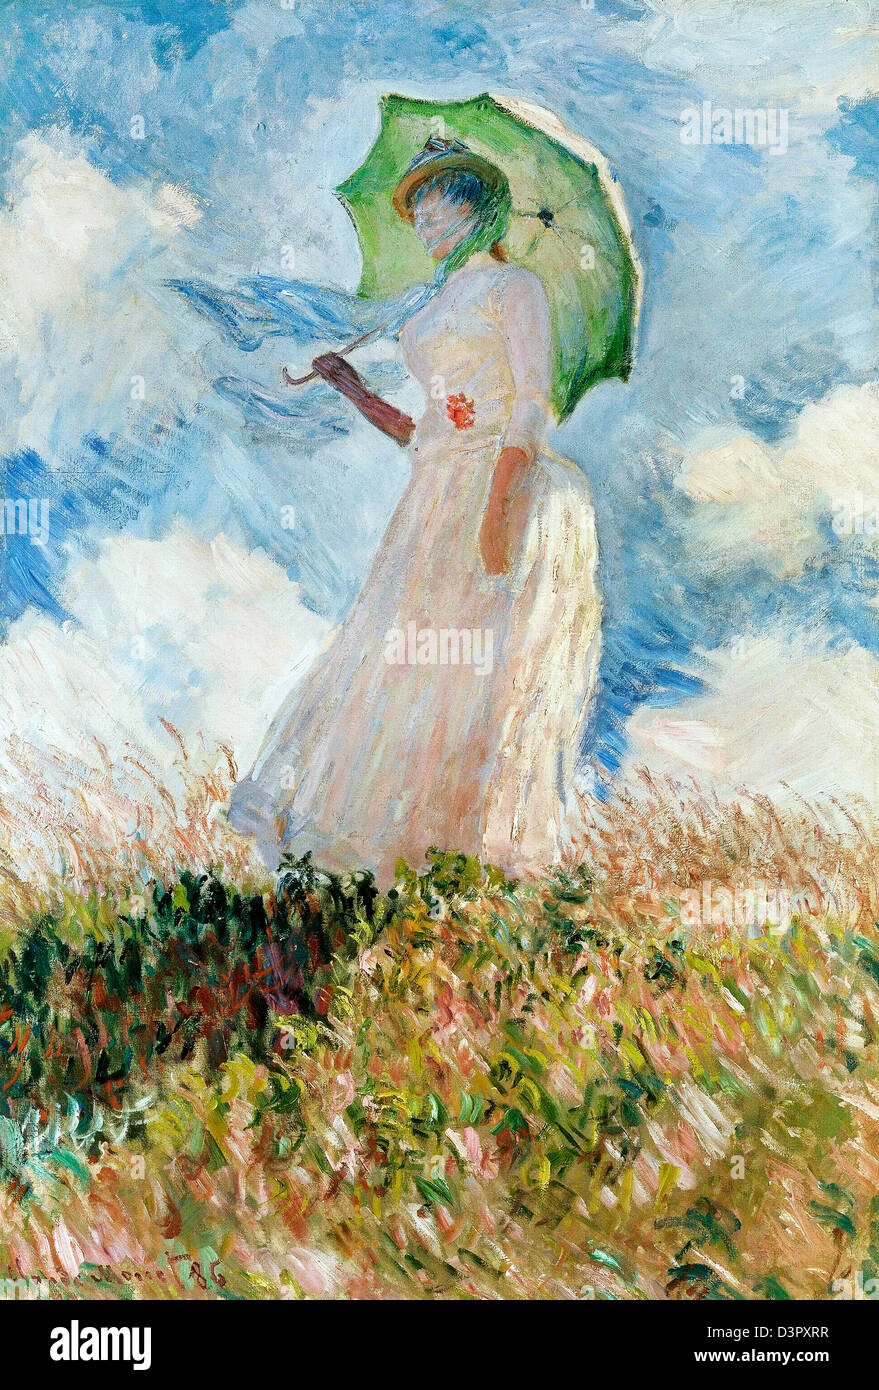 Claude Monet, Studie einer Figur im Freien: Frau mit Sonnenschirm, nach  links, 1886-Öl auf Leinwand. Musée d ' Orsay, Paris, Frankreich  Stockfotografie - Alamy